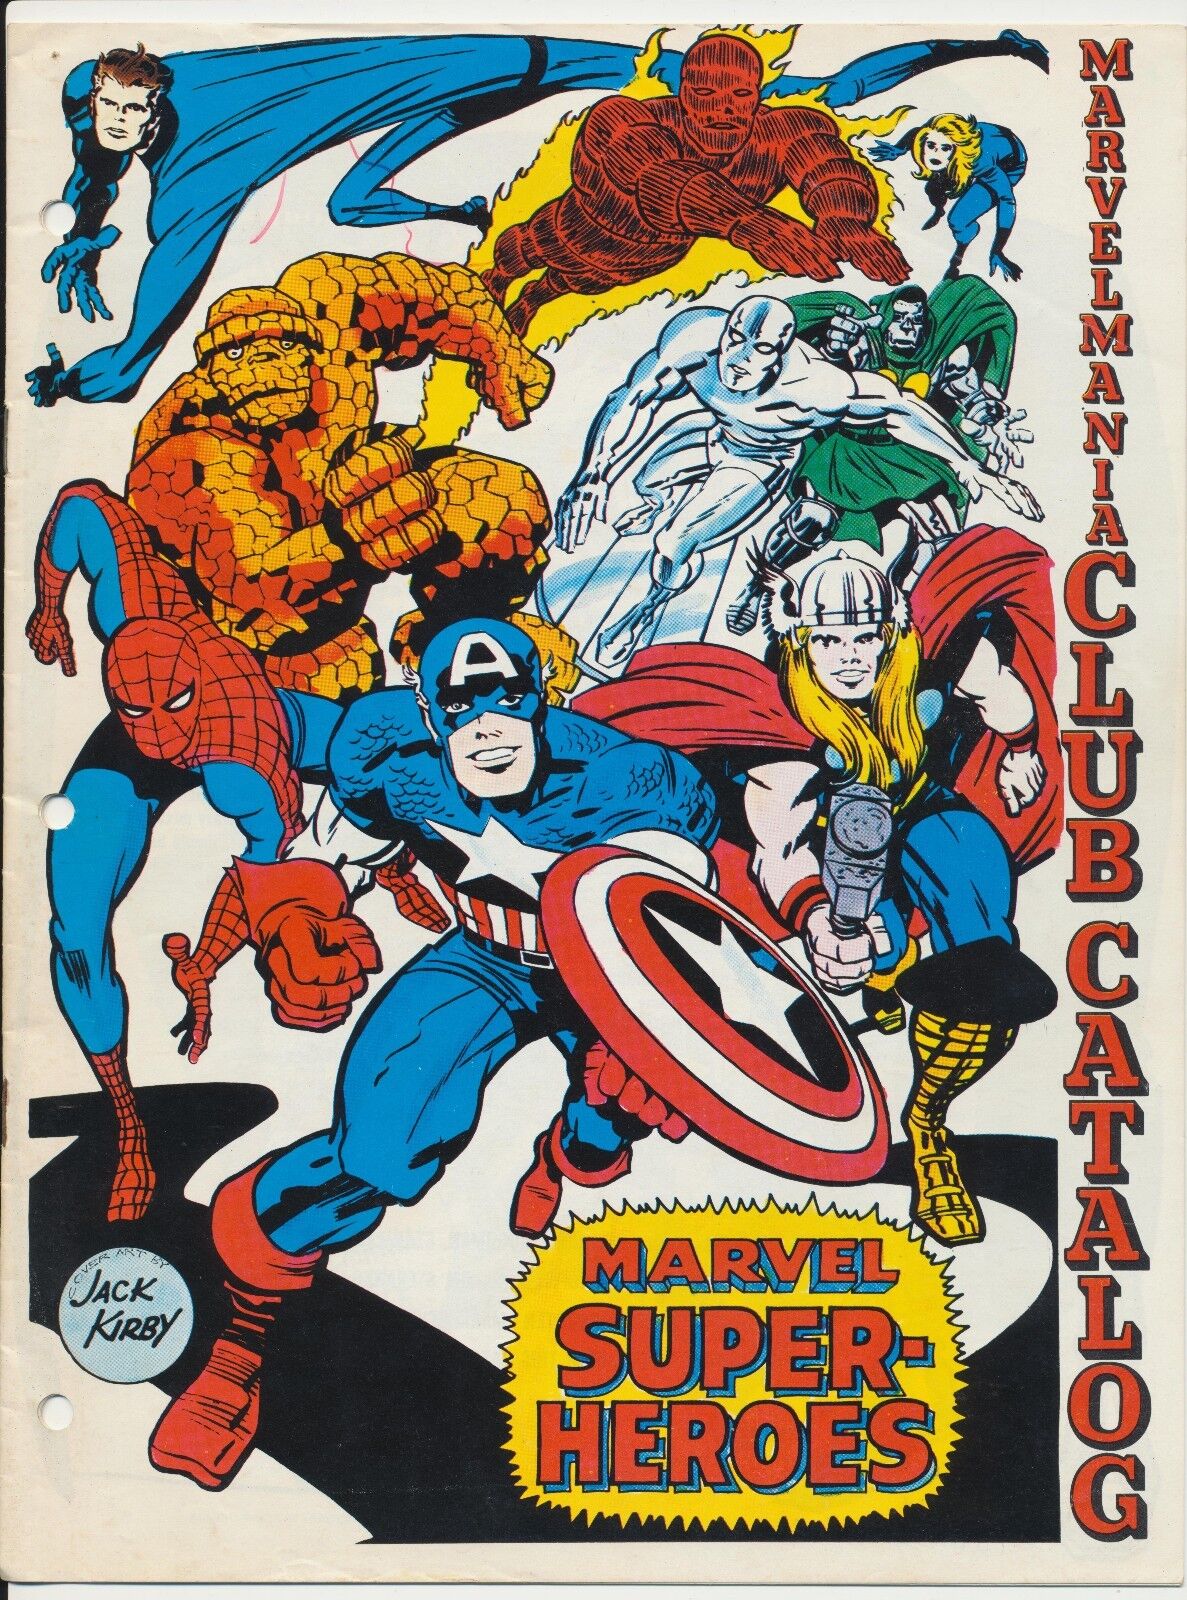 Marvelmania Club Catalog Super-Heroes, Full Color, Marvel Comics 1969, Kirby Art